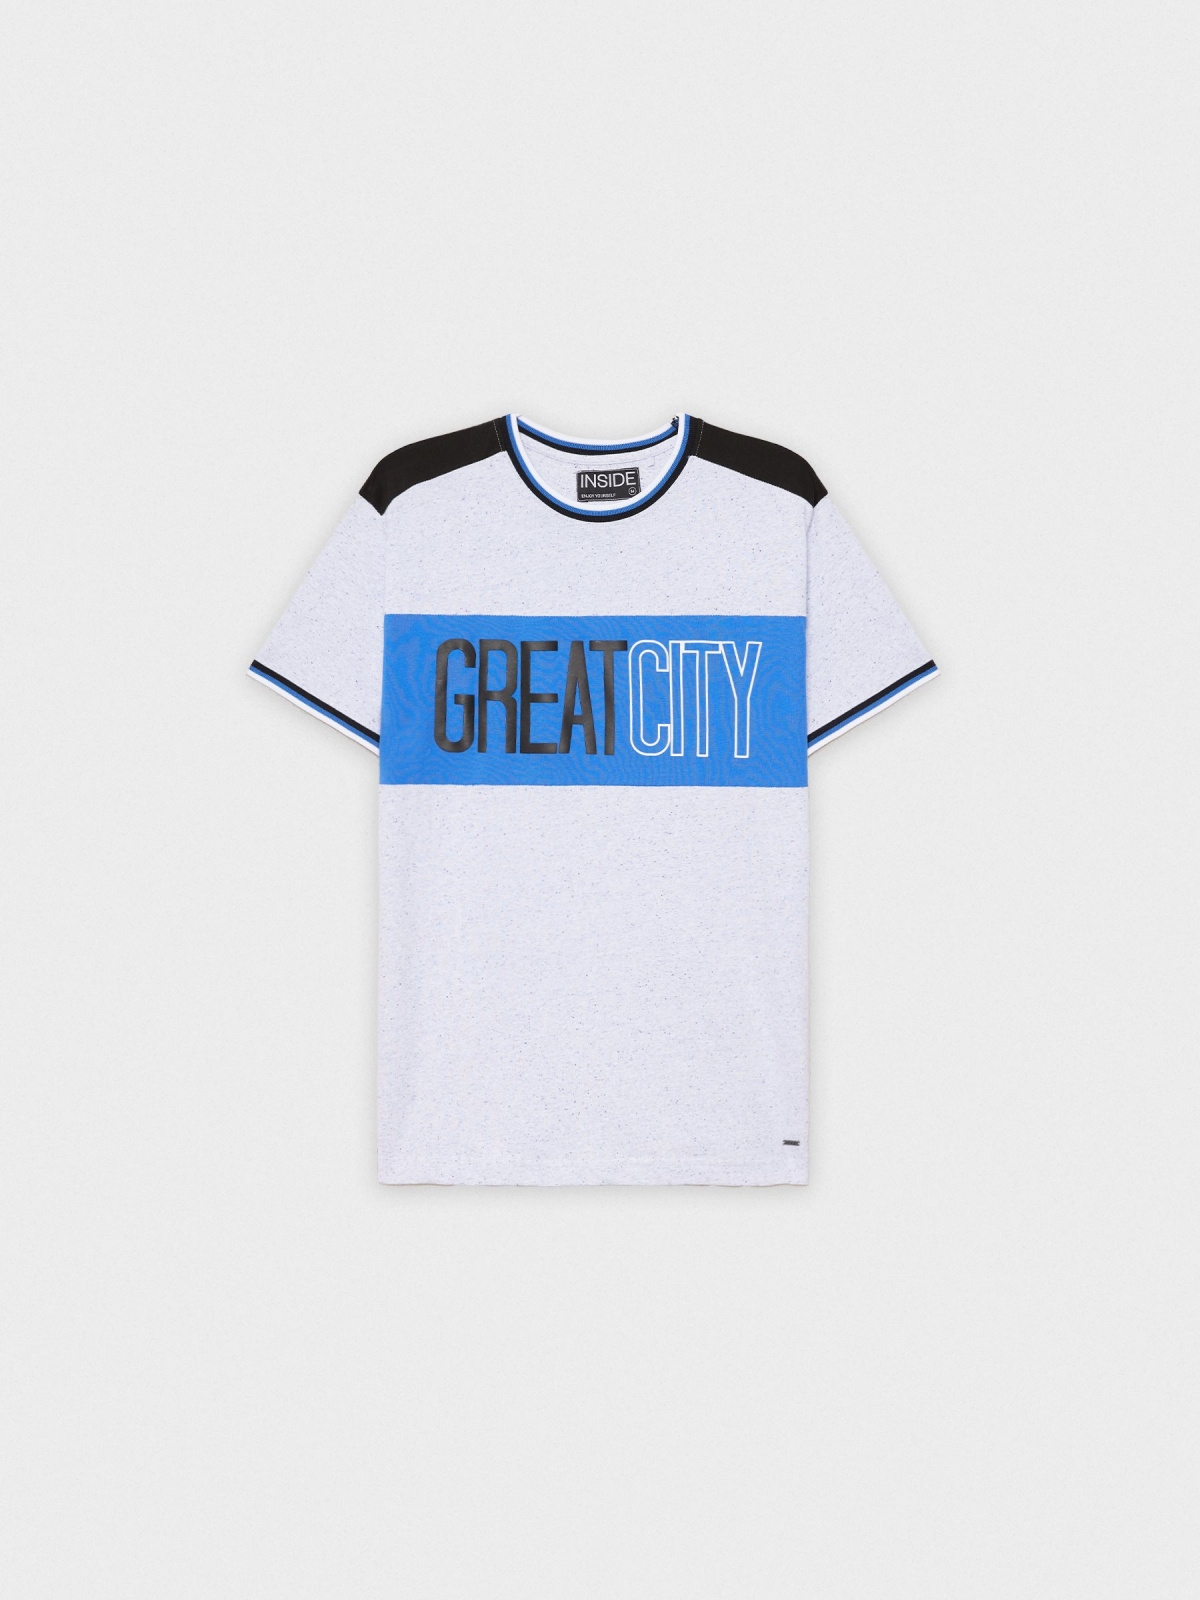  Camiseta Greatcity blanco